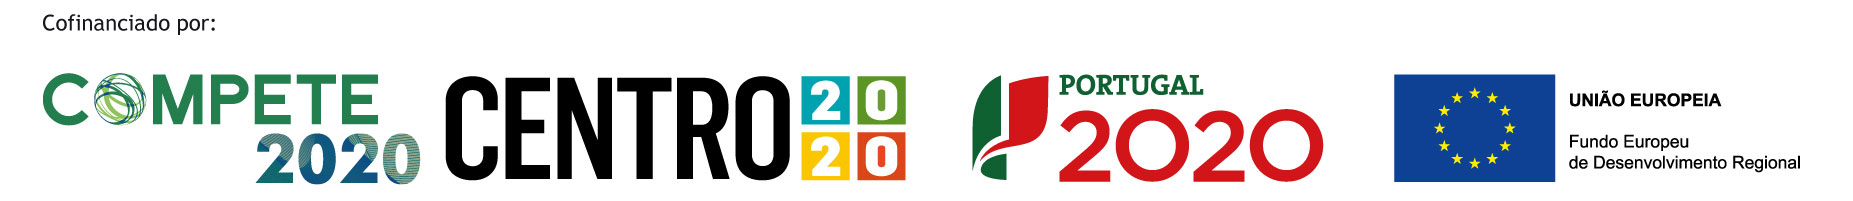 Compete 2020 - Centro 2020 - Portugal 2020 - UE